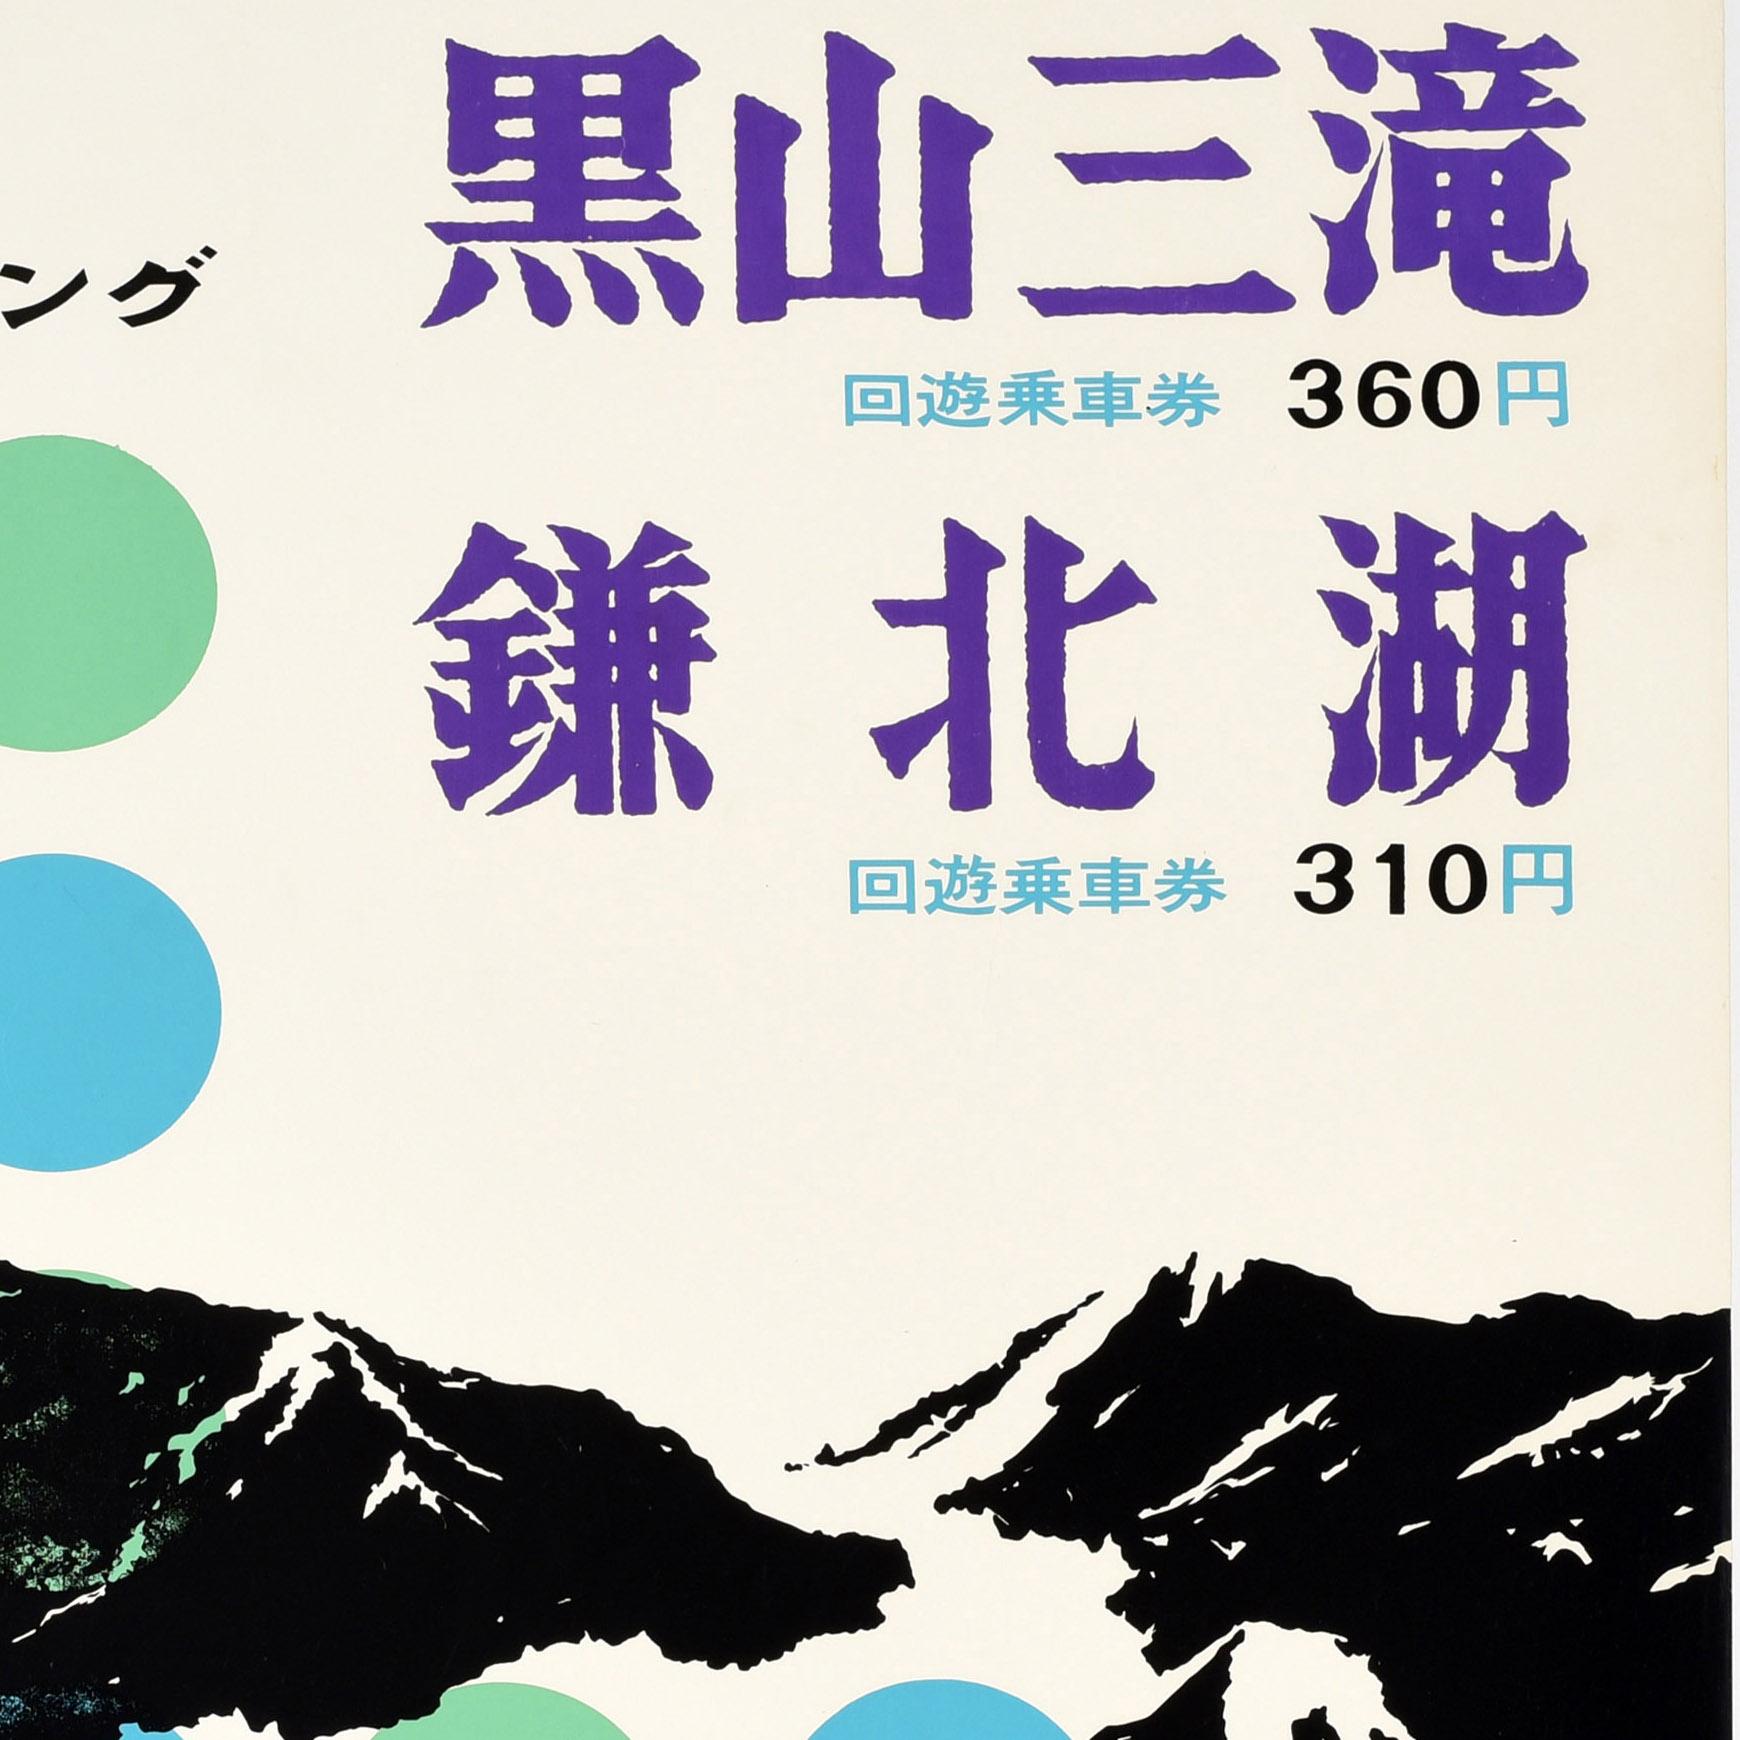 Original-Reiseplakat für die drei Wasserfälle von Kuroyama - die Medaki-Fälle, die Odaki-Fälle und der Tengu Taki -, auf dem die Bergkette mit Schluchten, Tälern und Bäumen in schwarzer Farbe über grünen und blauen Punkten dargestellt ist. Der Text